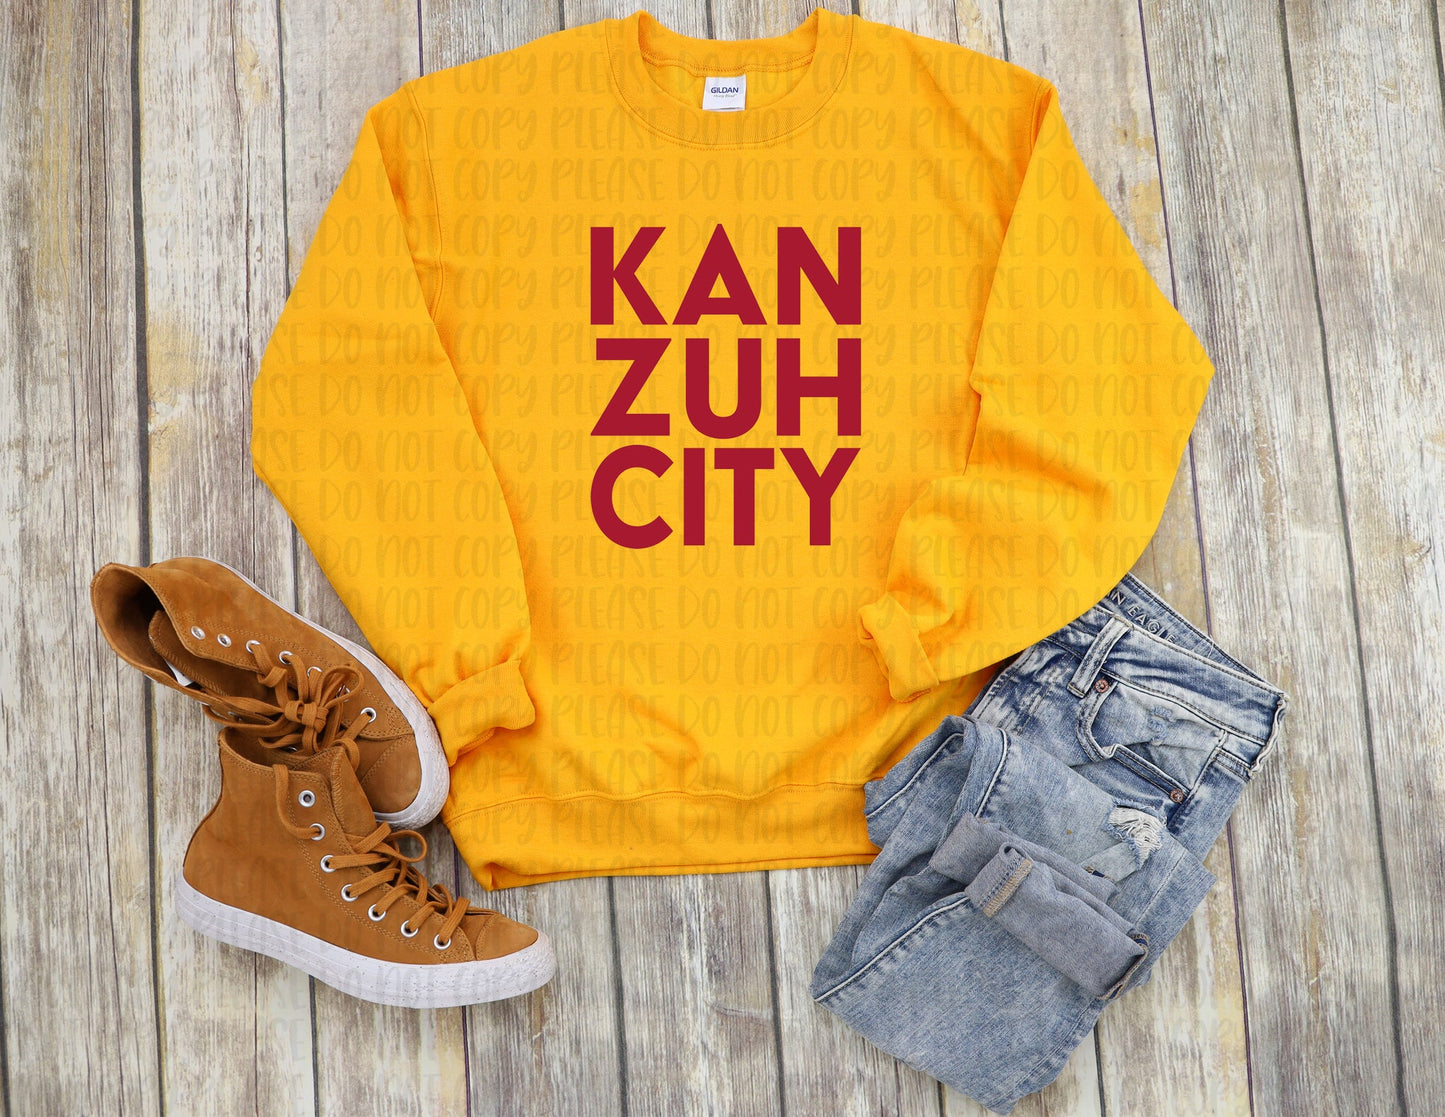 KAN ZUH CITY